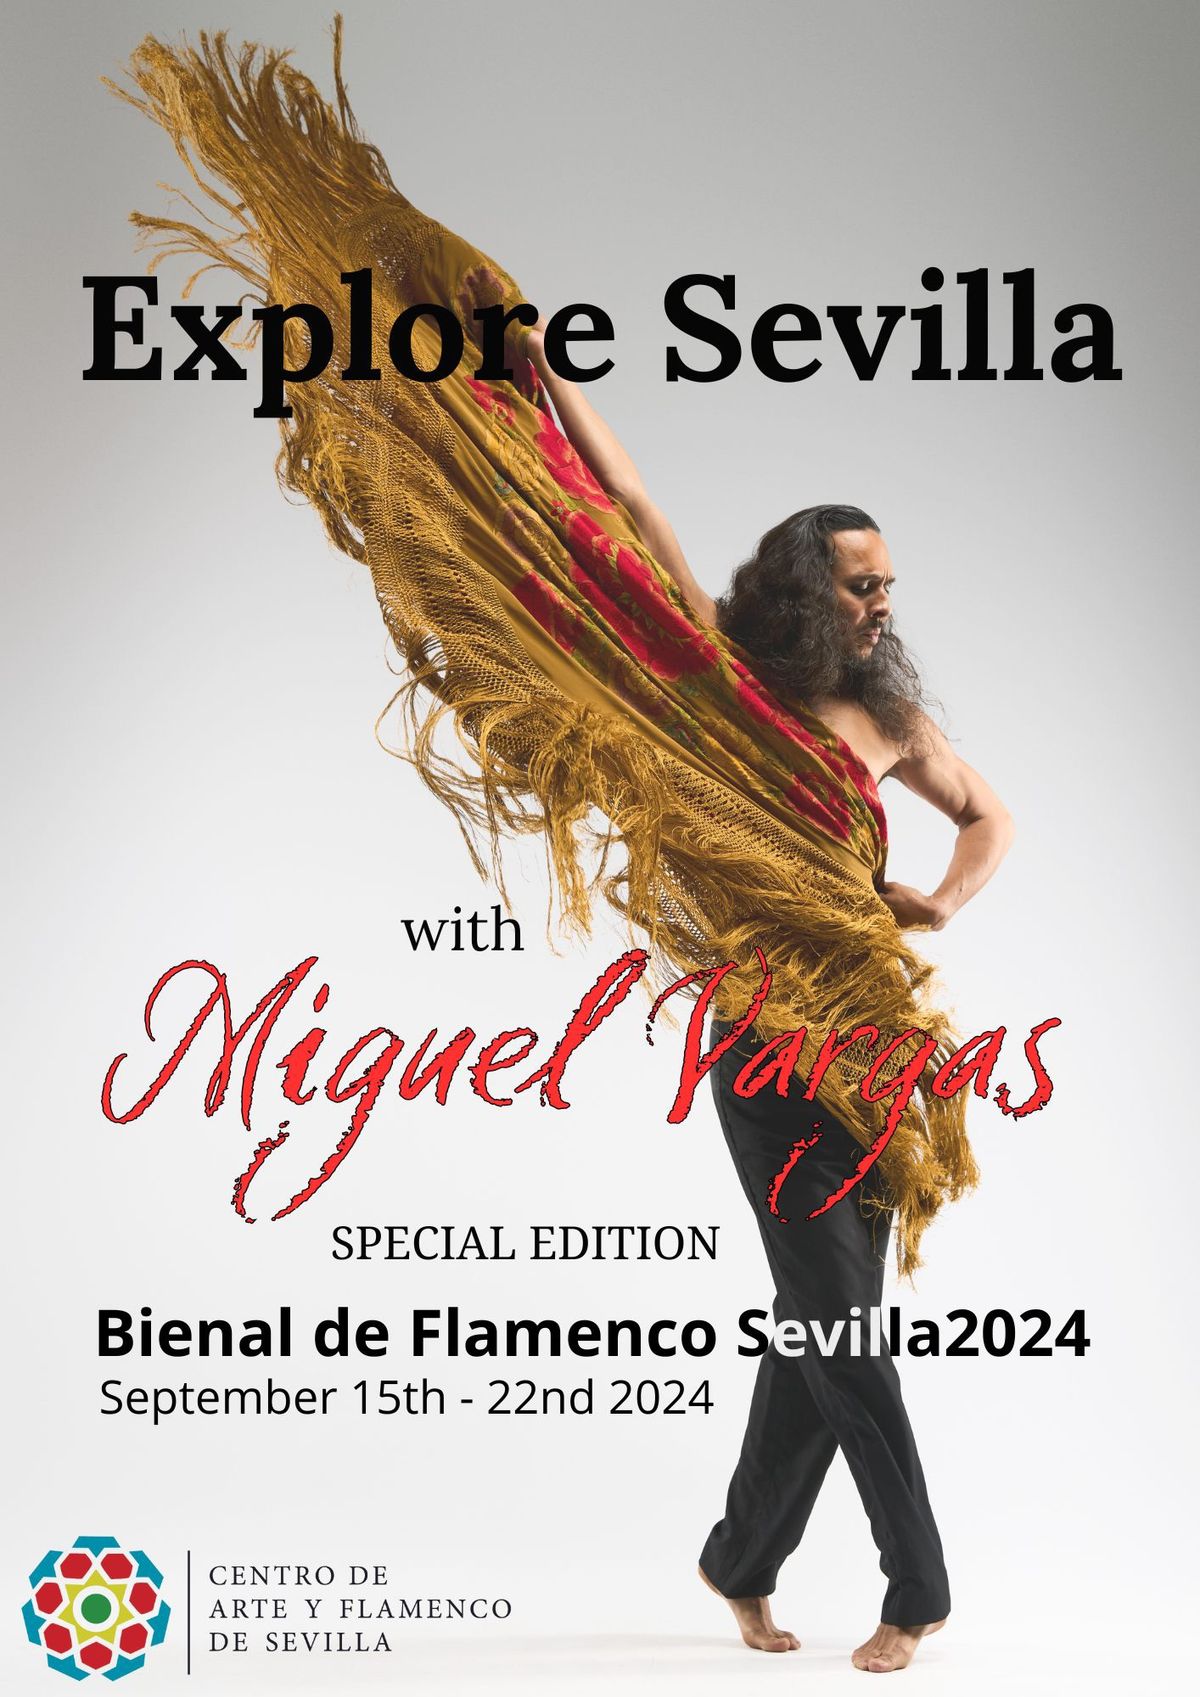 Explore Sevilla with Miguel Vargas | Bienal de Flamenco Sevilla 2024